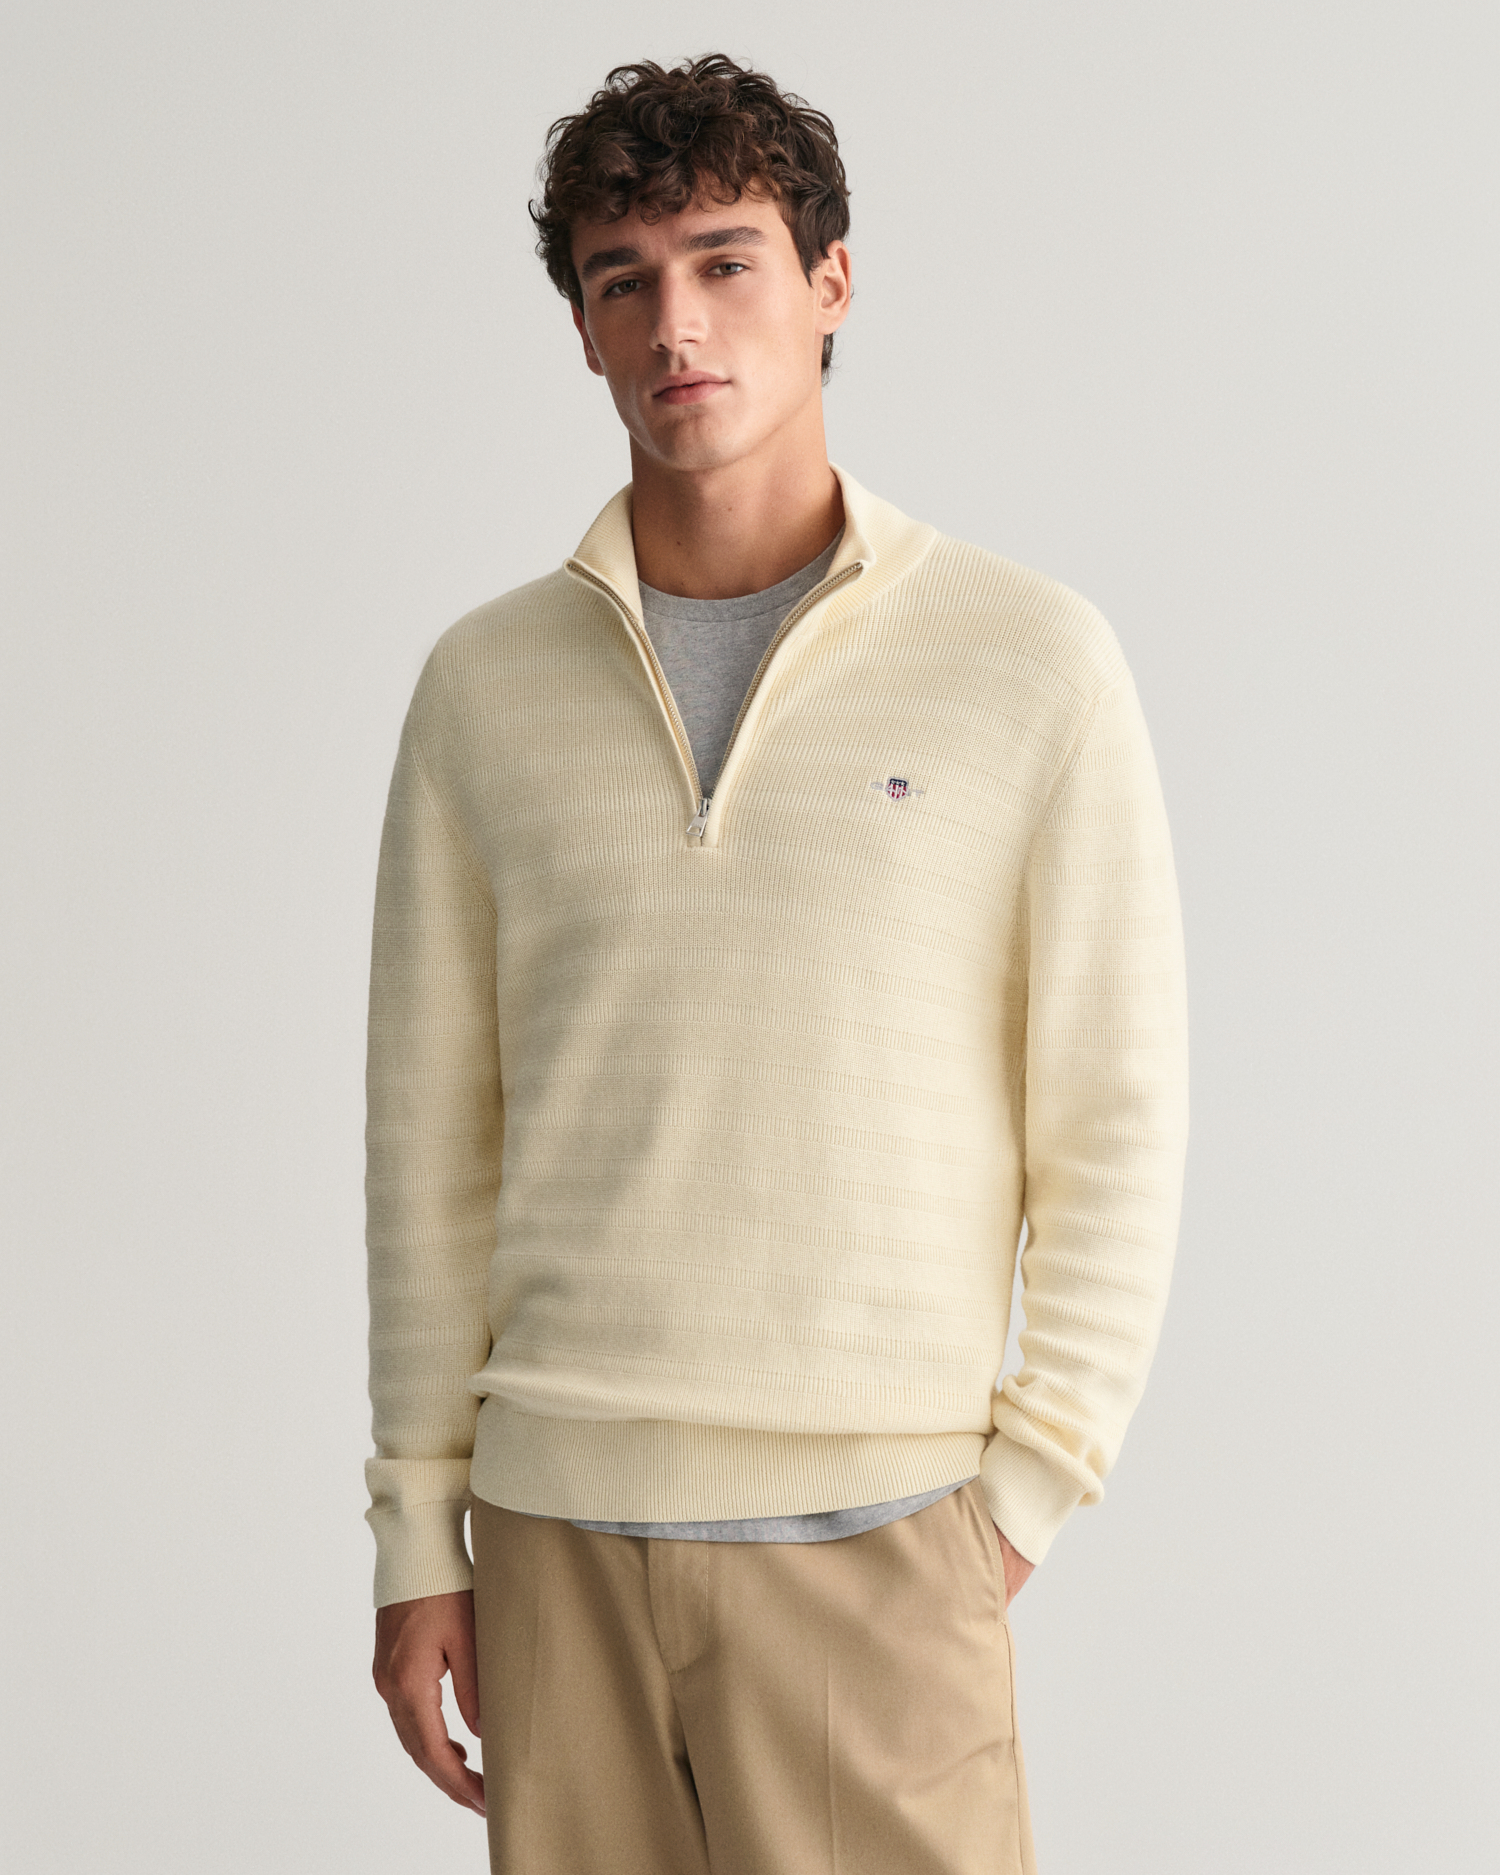 Striped Textured Cotton Half-Zip Sweater - GANT